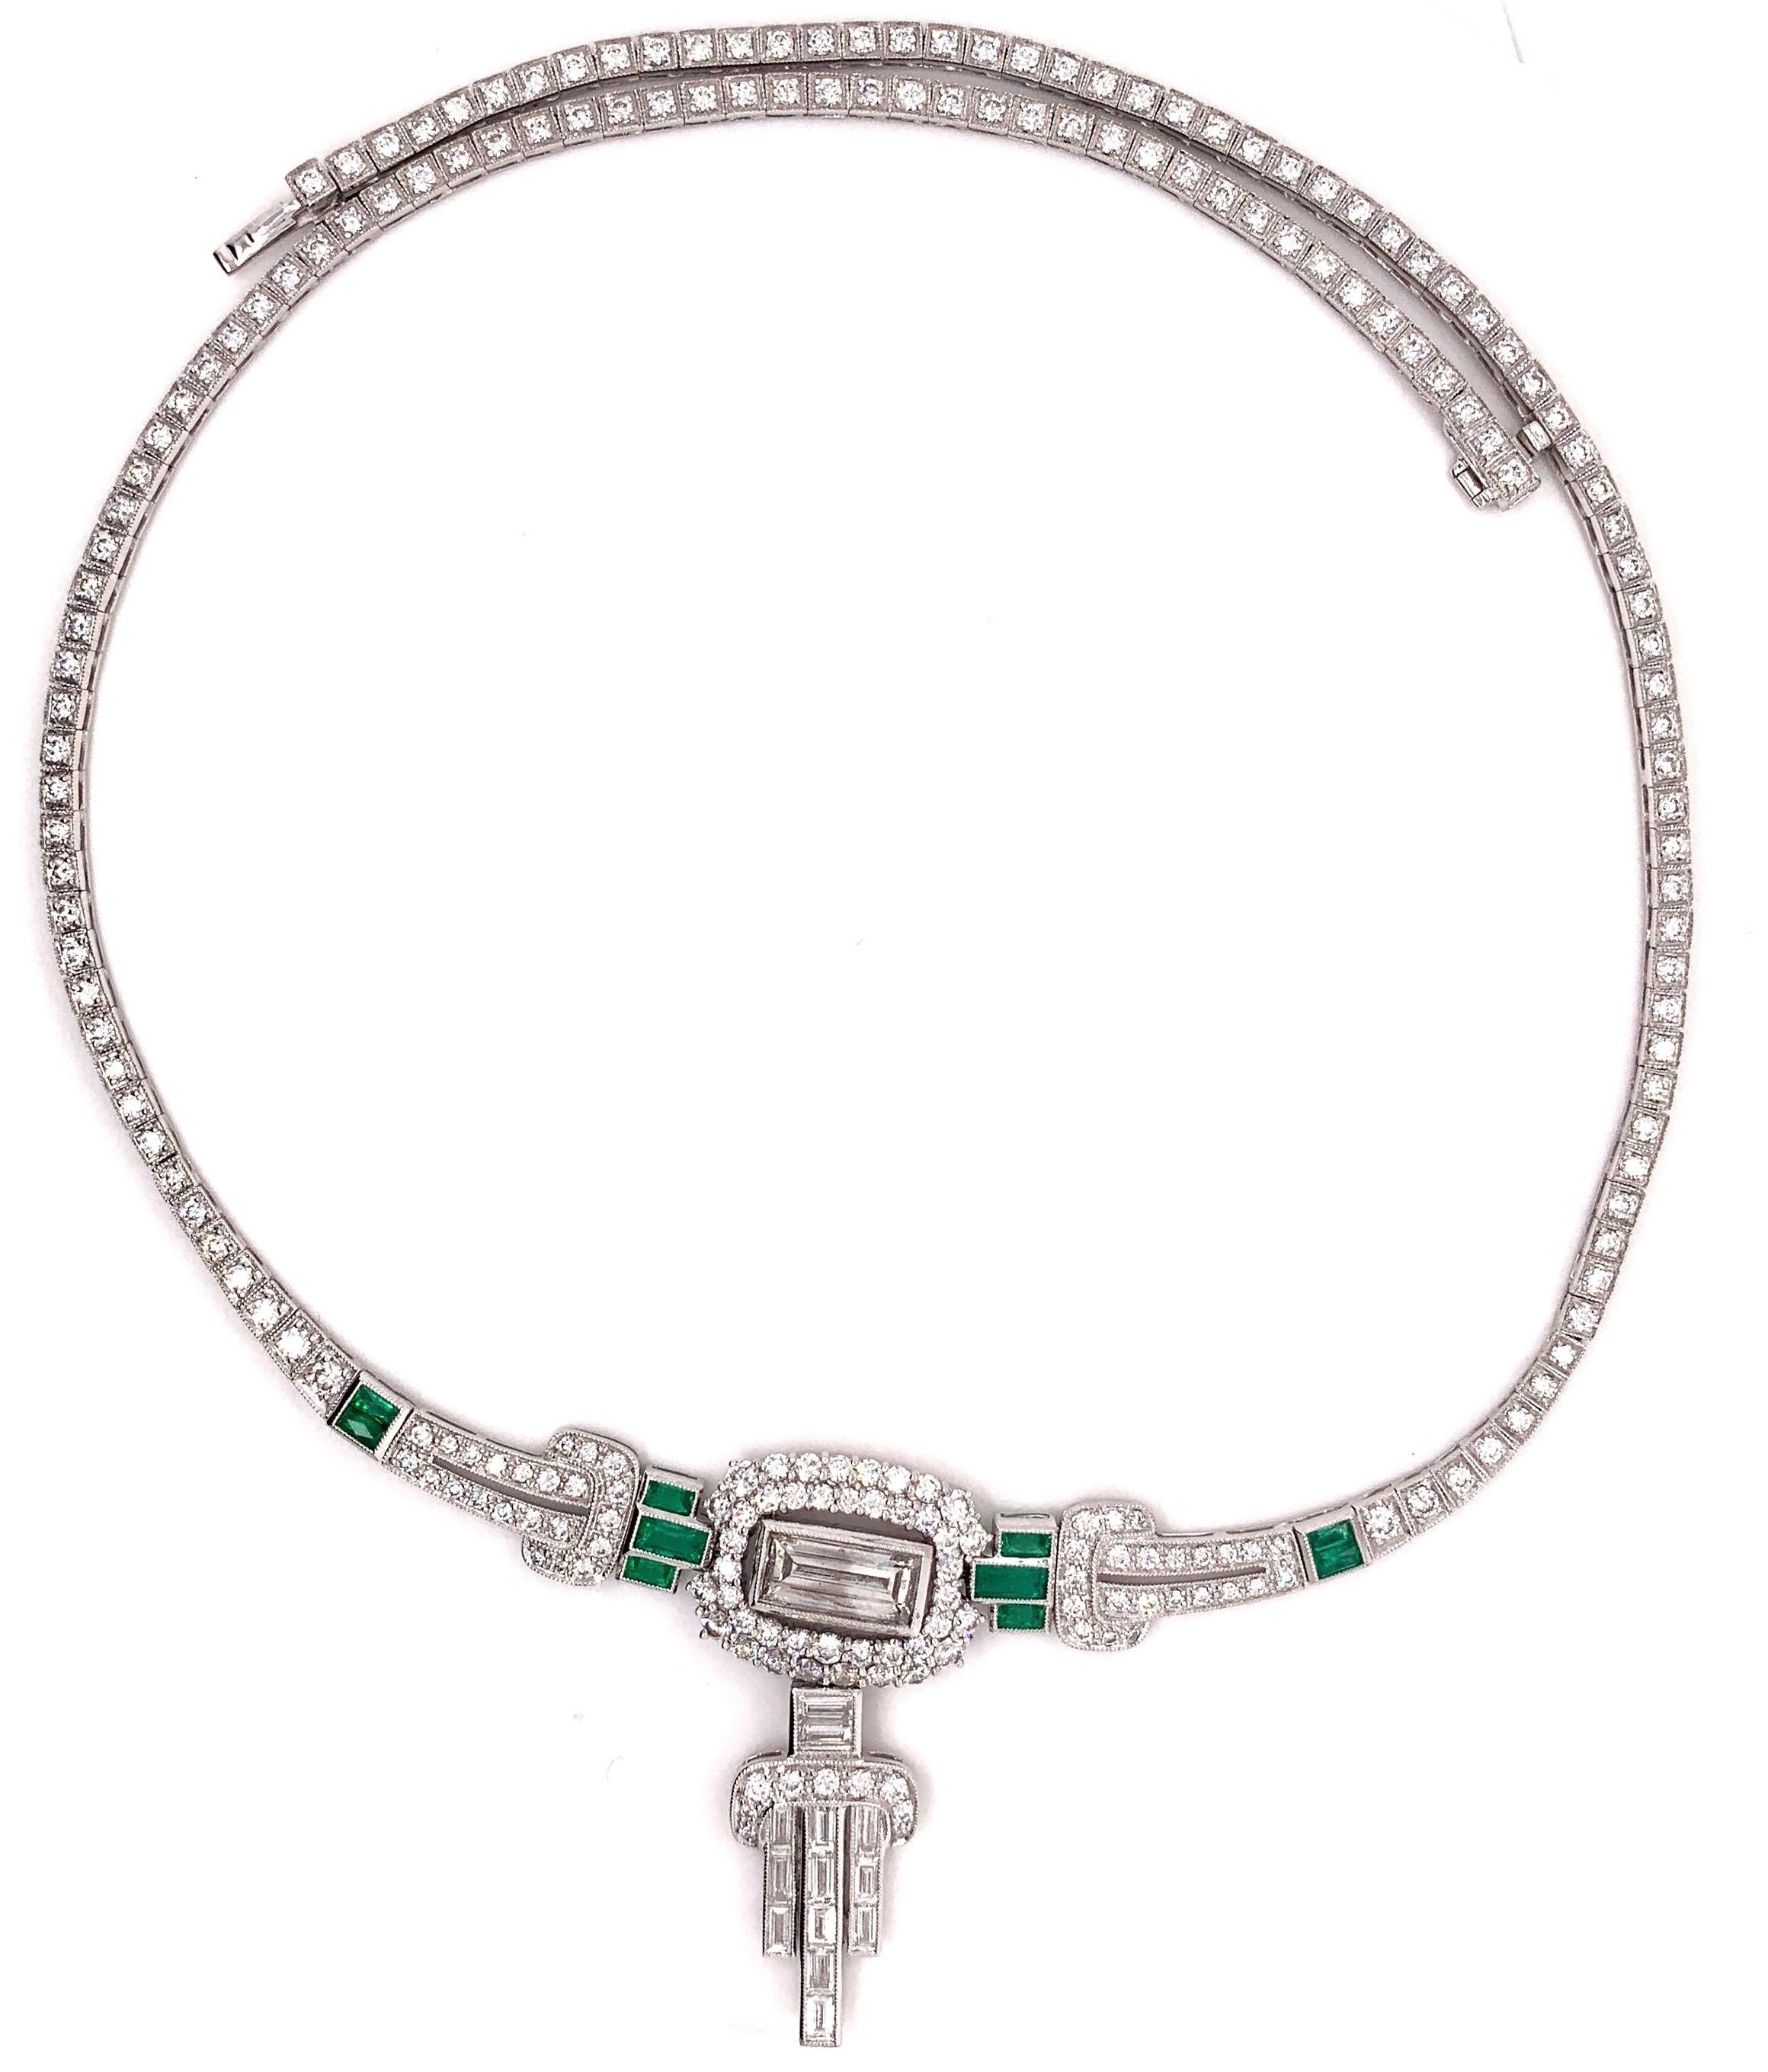 Platin-Halskette mit Smaragdsteinen von 0,90 Karat und 1,51 Karat Baguetteschliff in der Mitte, verknotet mit kleinen schillernden Diamanten mit einem Gesamtkaratgewicht von 5,81. 

Sophia D von Joseph Dardashti LTD ist seit 35 Jahren weltweit